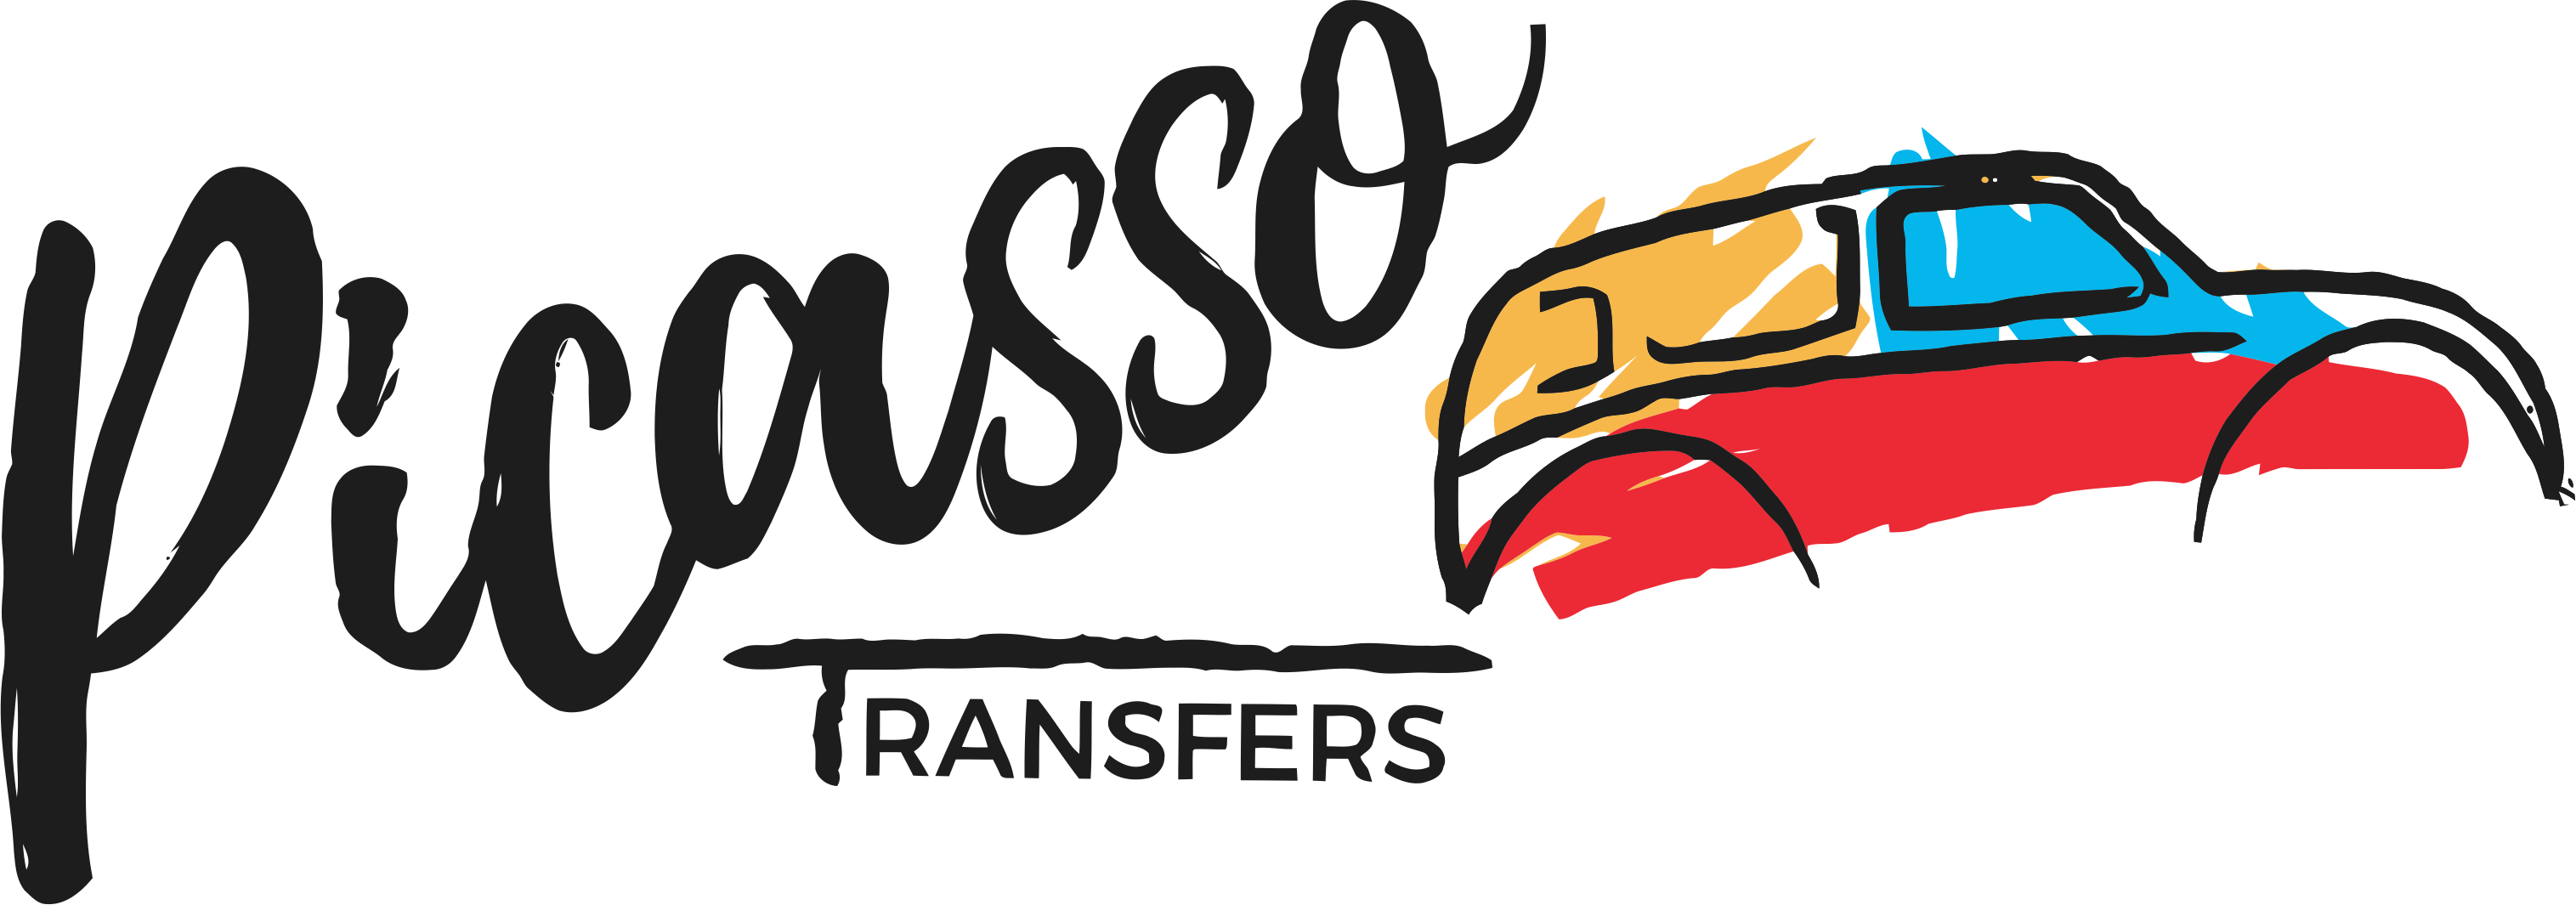 Picasso Transfers | Faq - Picasso Transfers